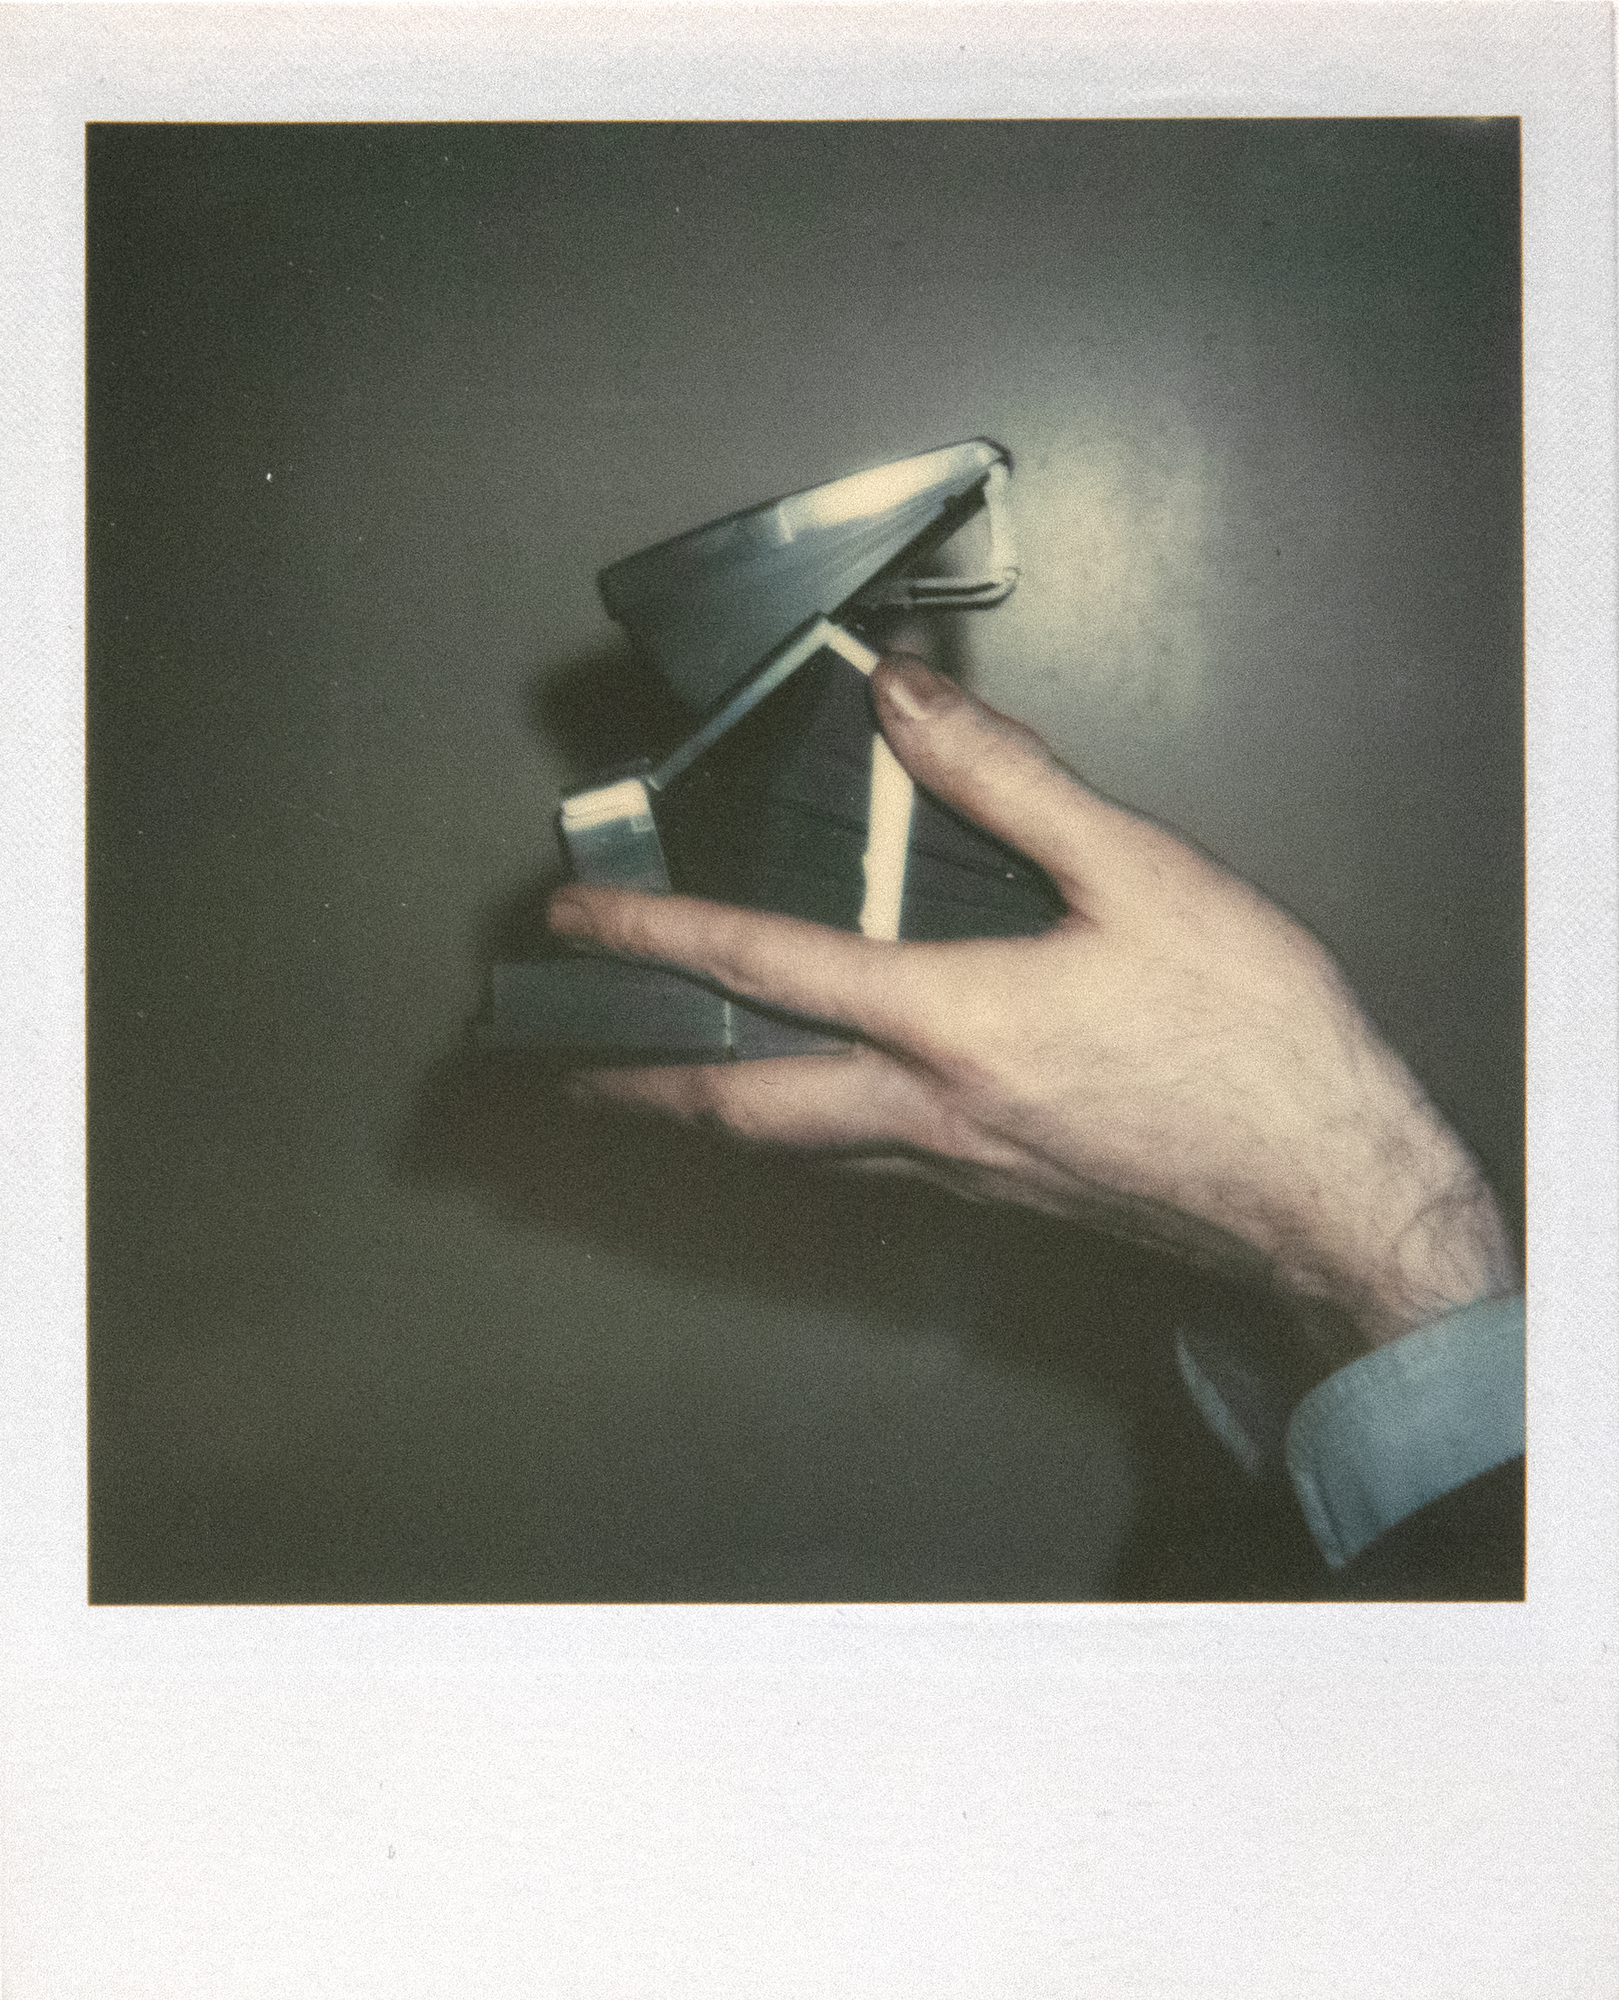 ANDY WARHOL - Autoportrait avec appareil photo (diptyque) - Polaroid, Polacolor - 4 1/4 x 3 3/8 in. ea.